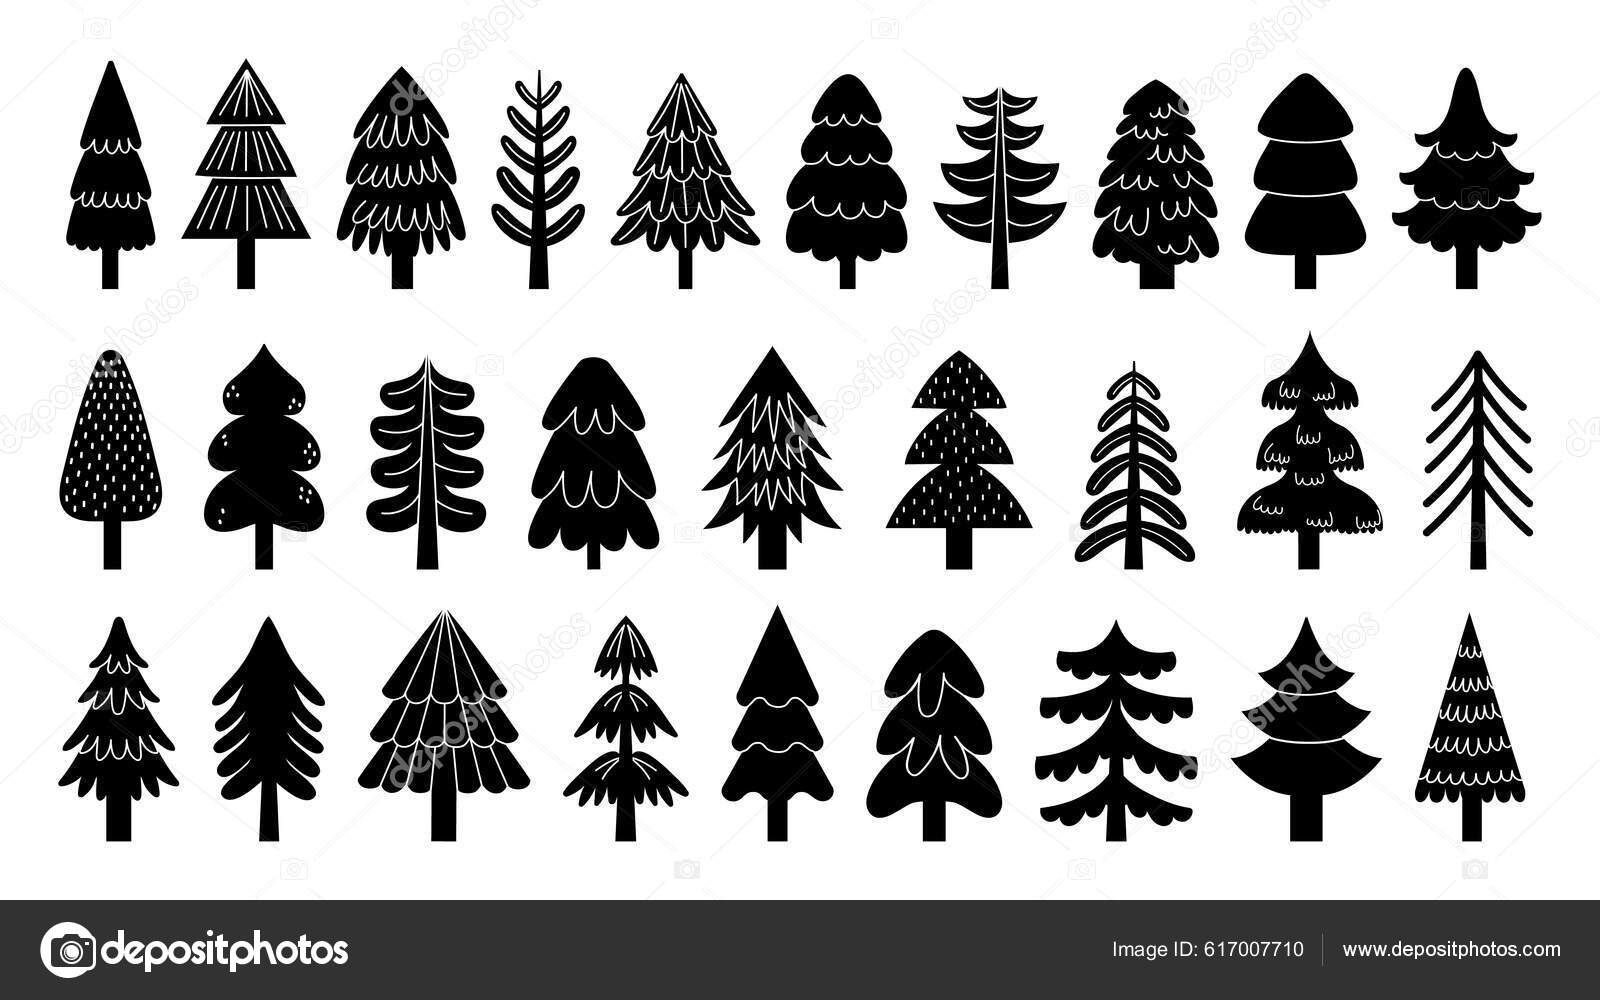 Desenho de árvore de natal - ícones de sinais grátis